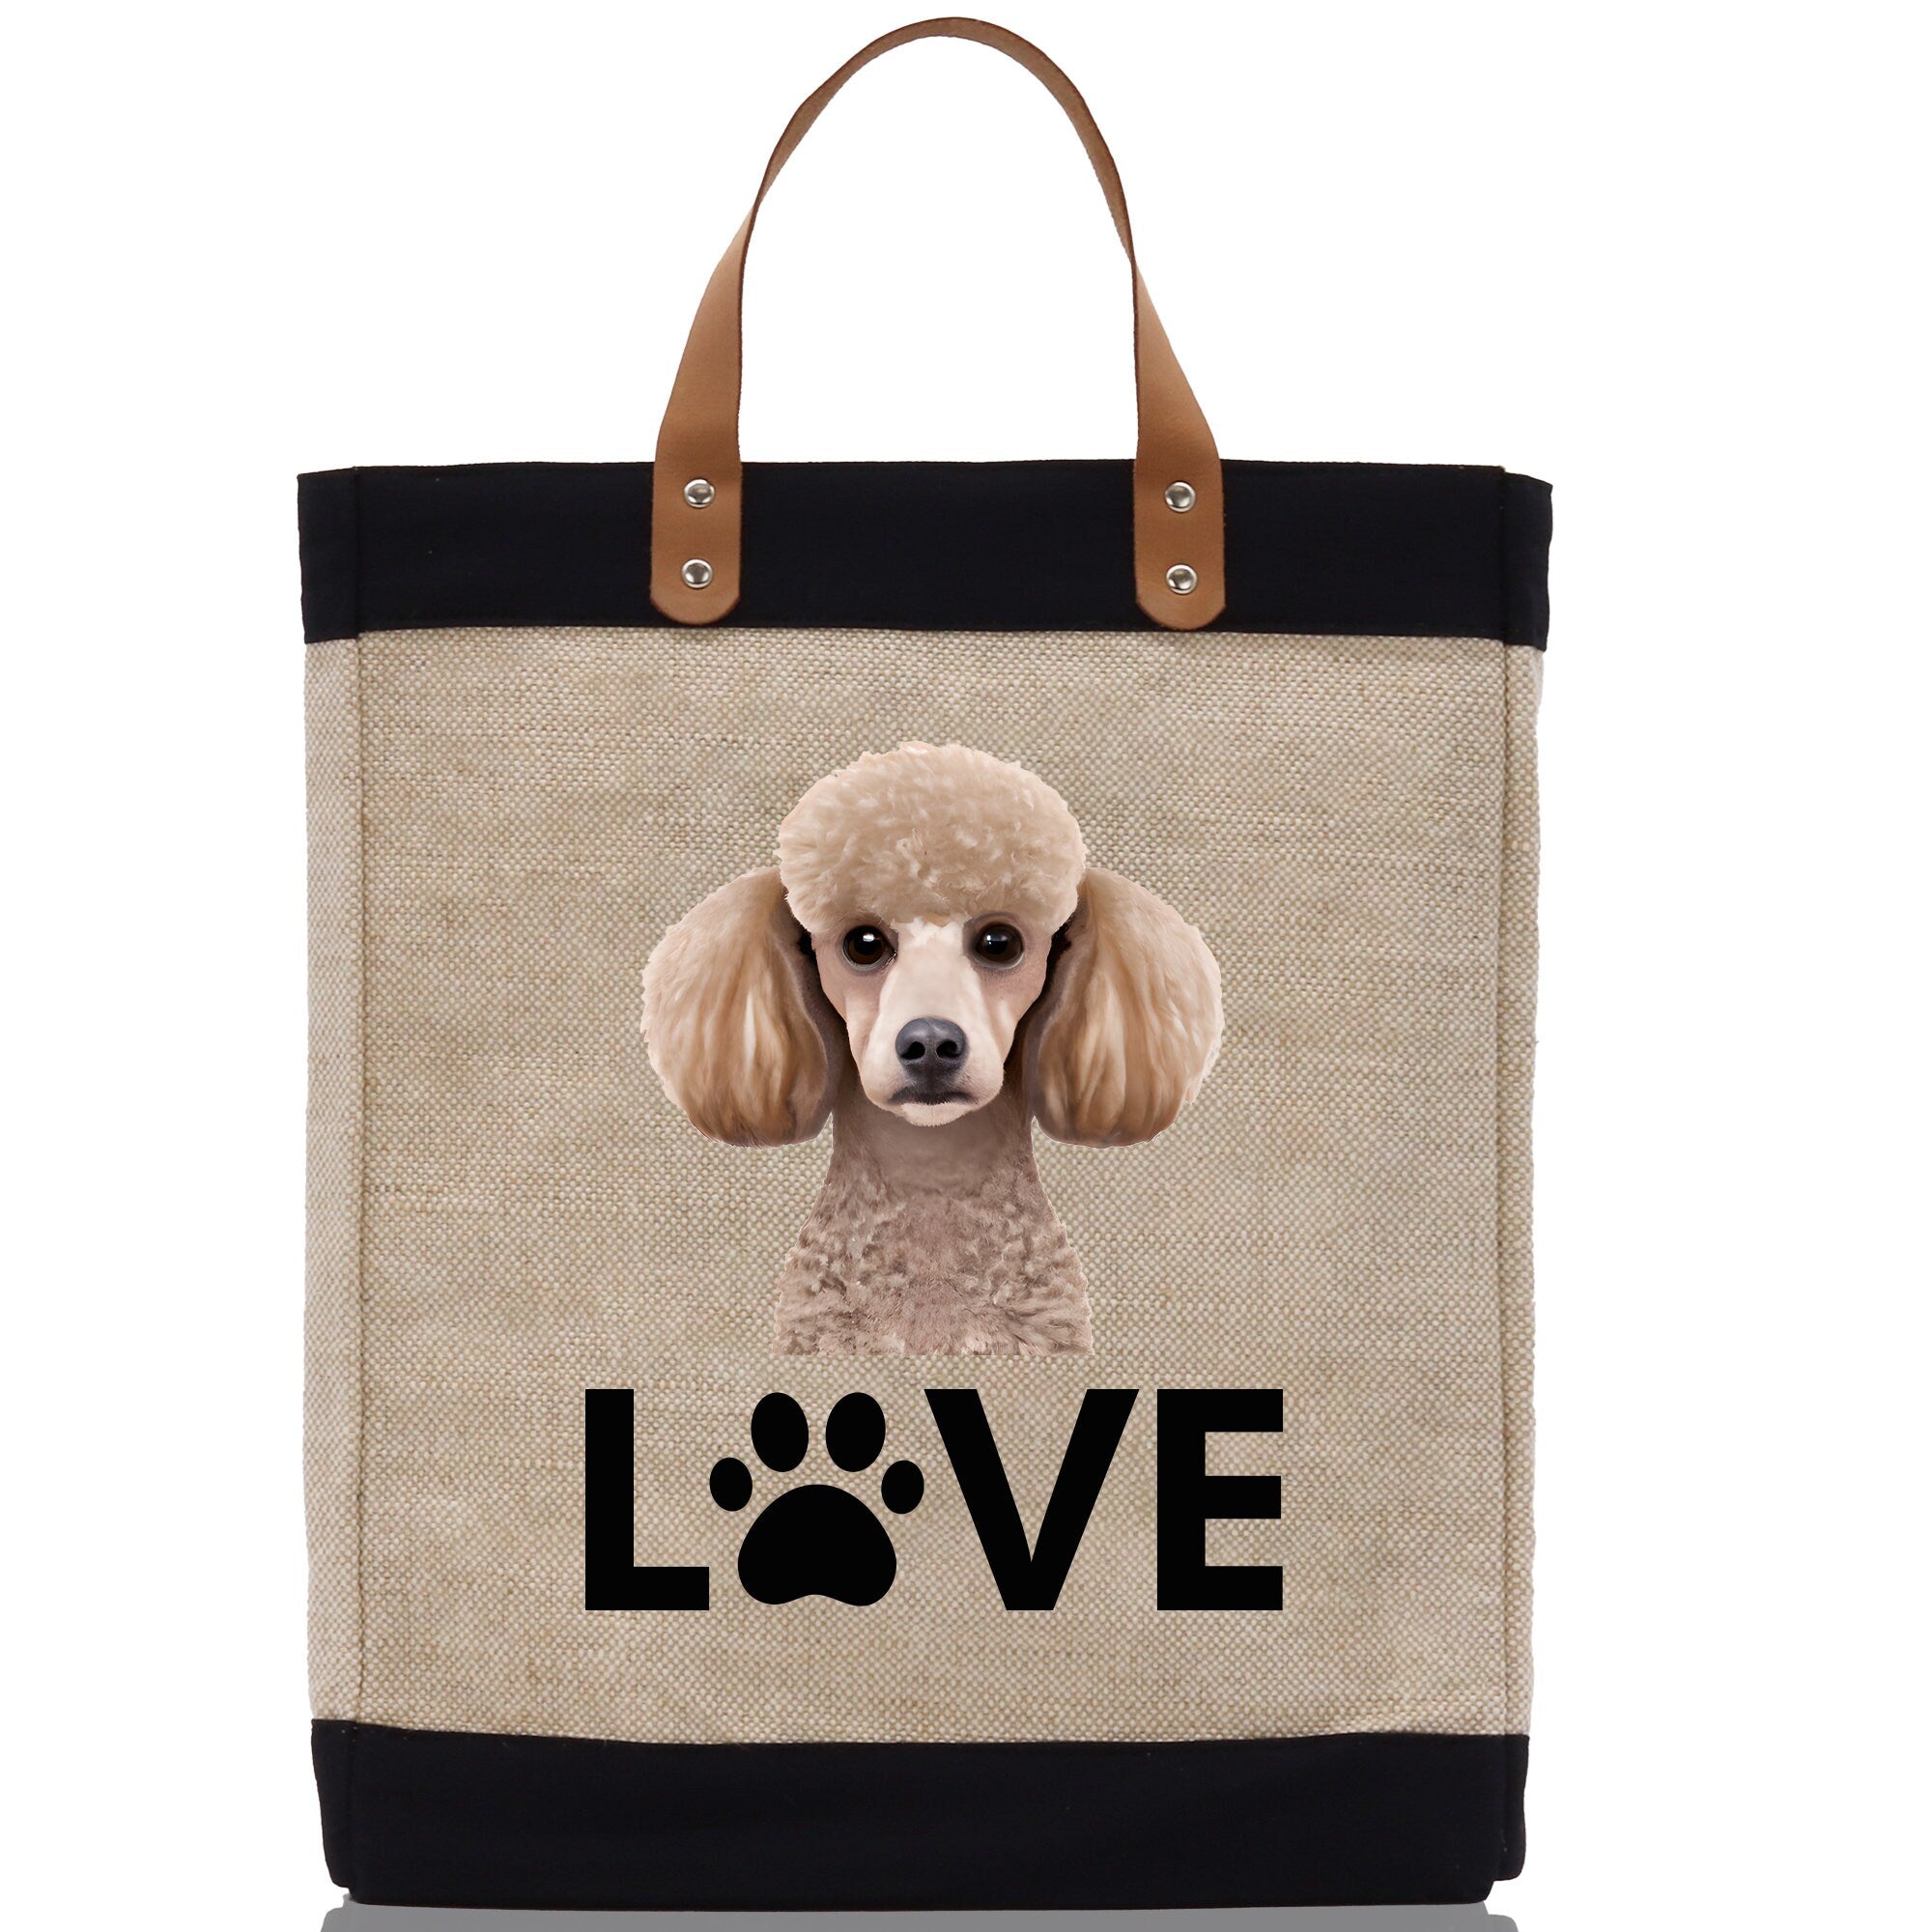 Poodle Love Dog Jute Canvas Tote Funny Farmer Market Bag Quote Jute Bag Shopping Bag Burlap Bag Dog Owner Gift